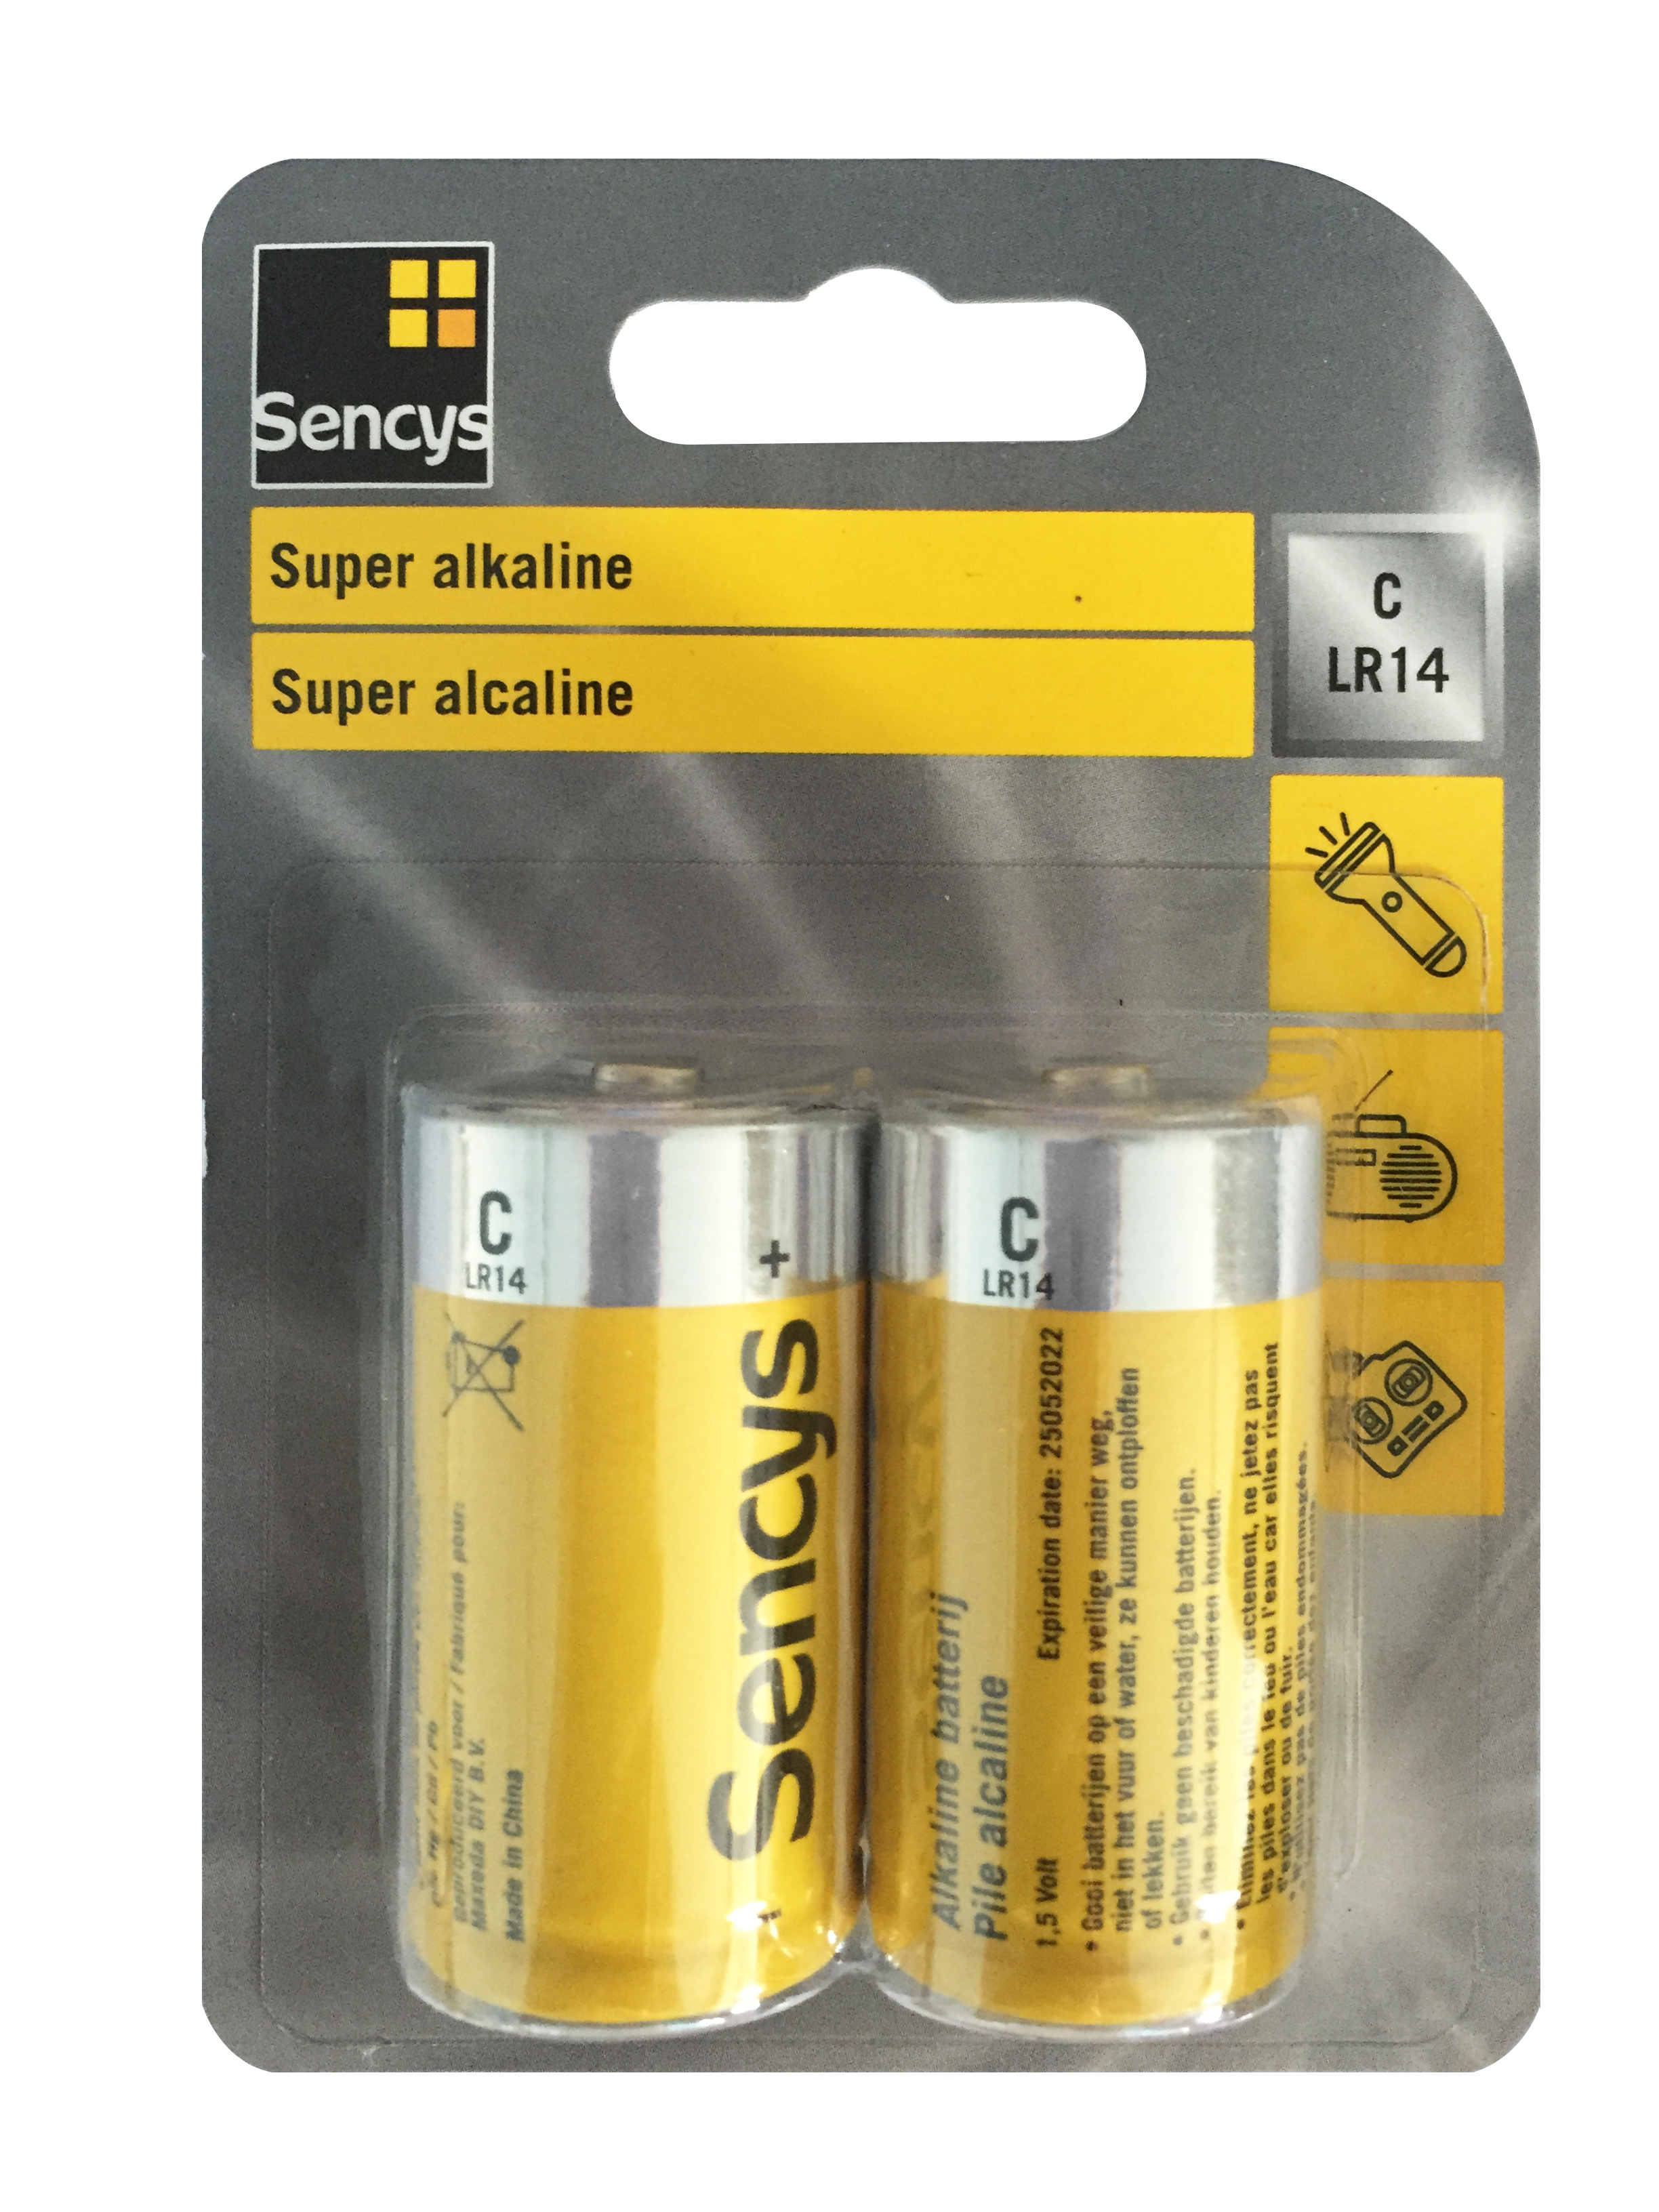 nakoming bijvoorbeeld Druipend Sencys super alkaline batterij C/LR14 2 stuks